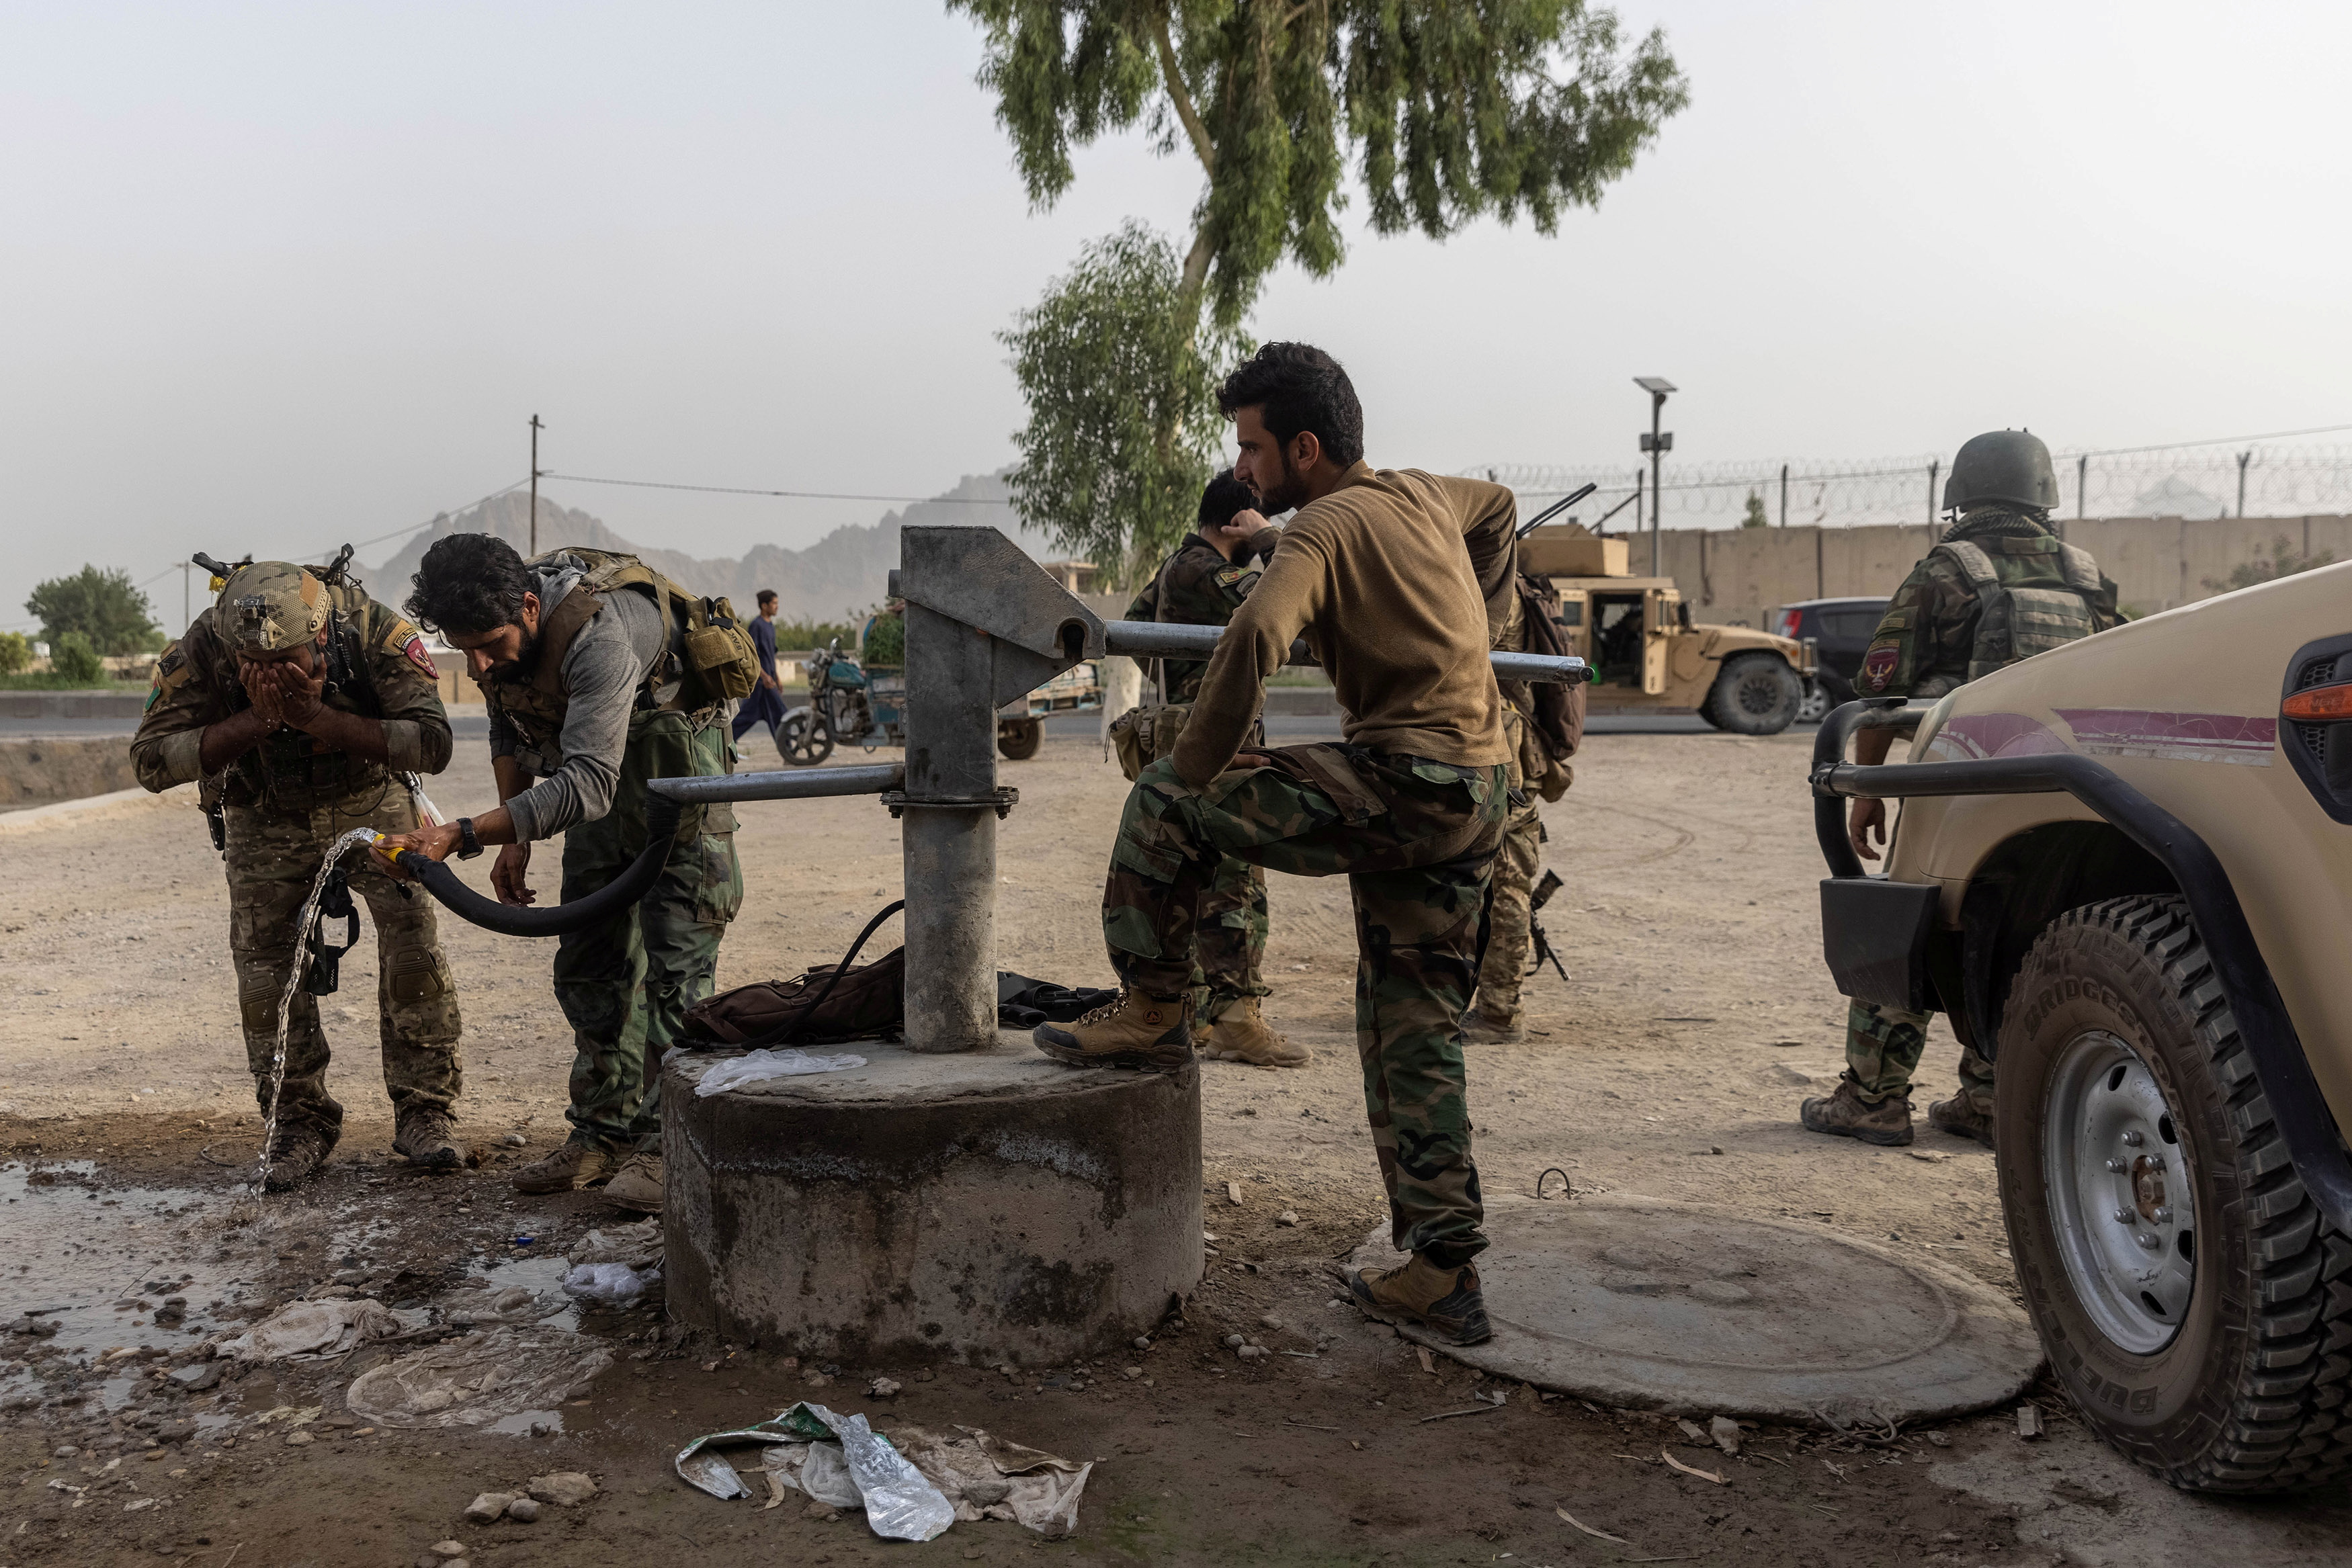 Miembros de las fuerzas especiales afganas se reagrupan tras fuertes enfrentamientos con los talibanes durante la misión de rescate de un policía asediado en un puesto de control, en la provincia de Kandahar, Afganistán, el 13 de julio de 2021. 